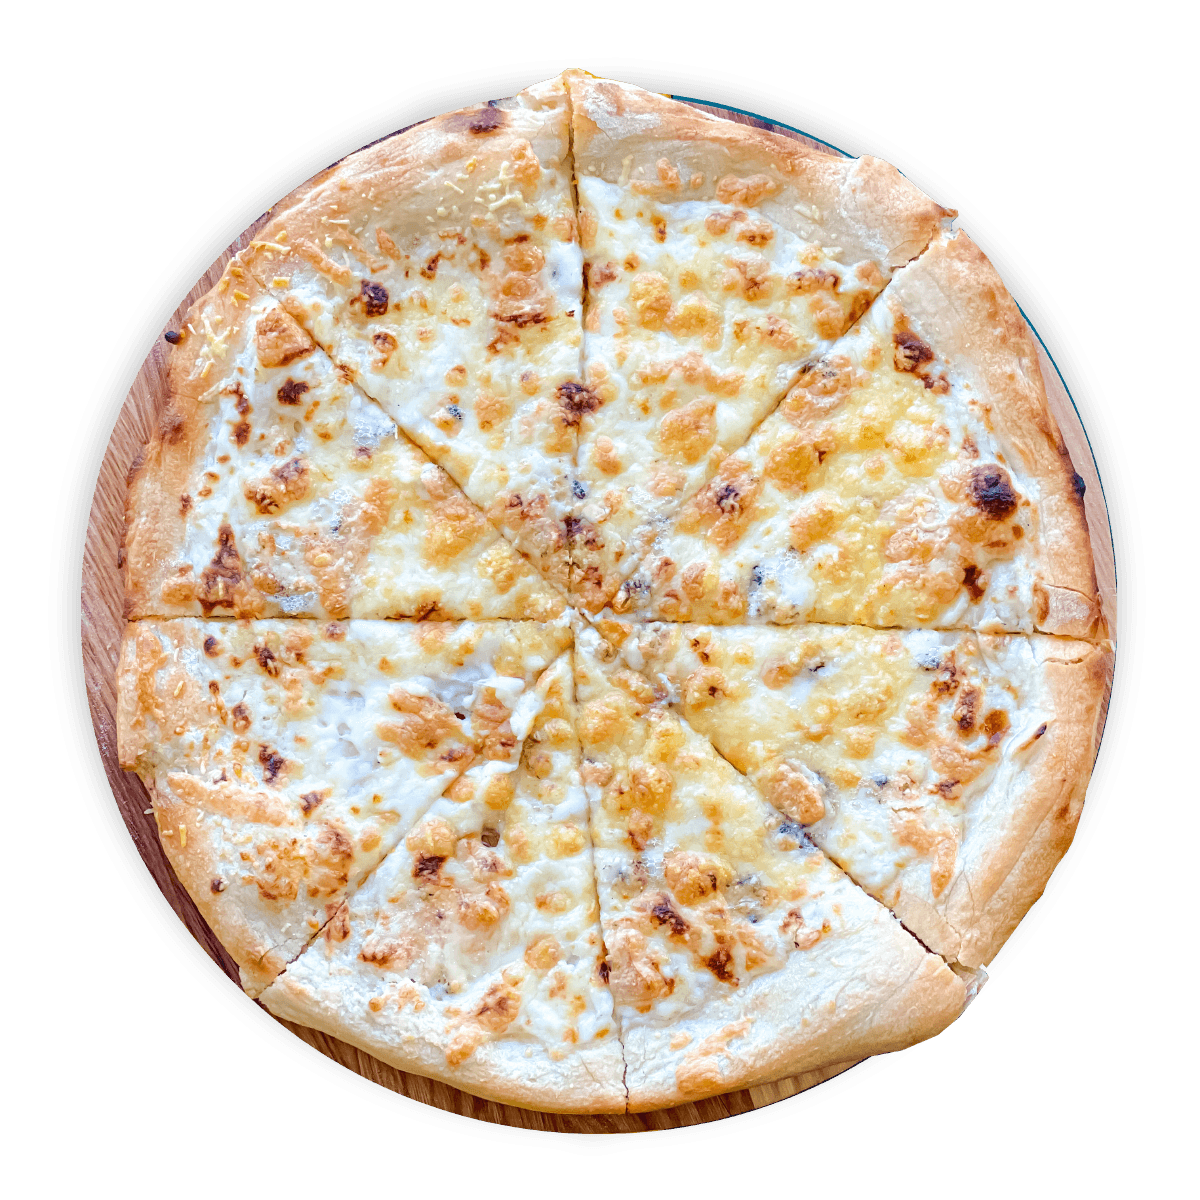 четыре сыра какие сыры в пицце фото 7